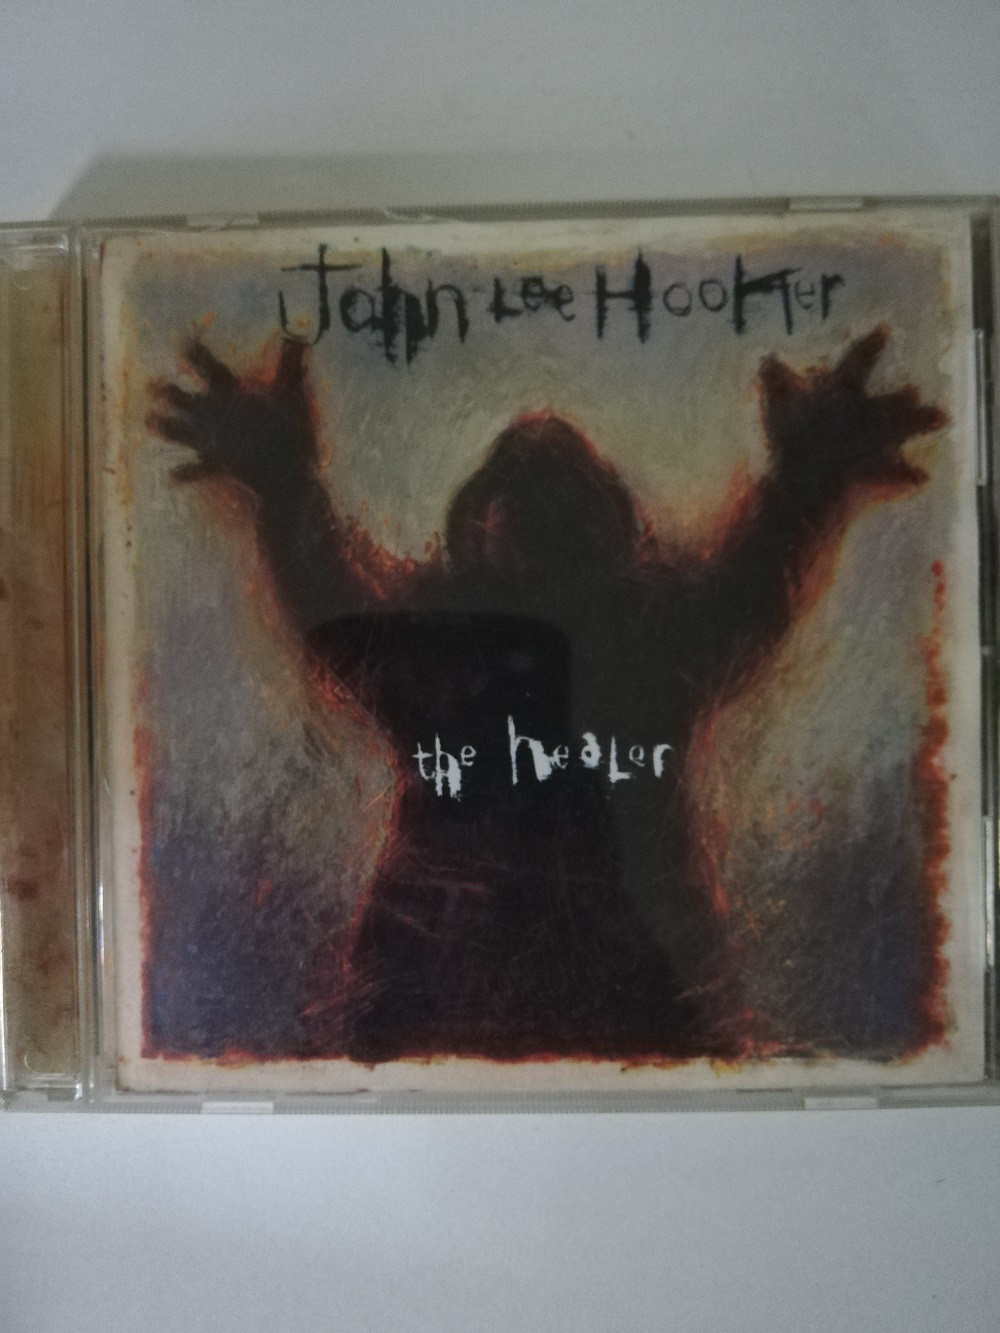 Imagen CD JOHN LEE HOOKER - THE HEALER 1